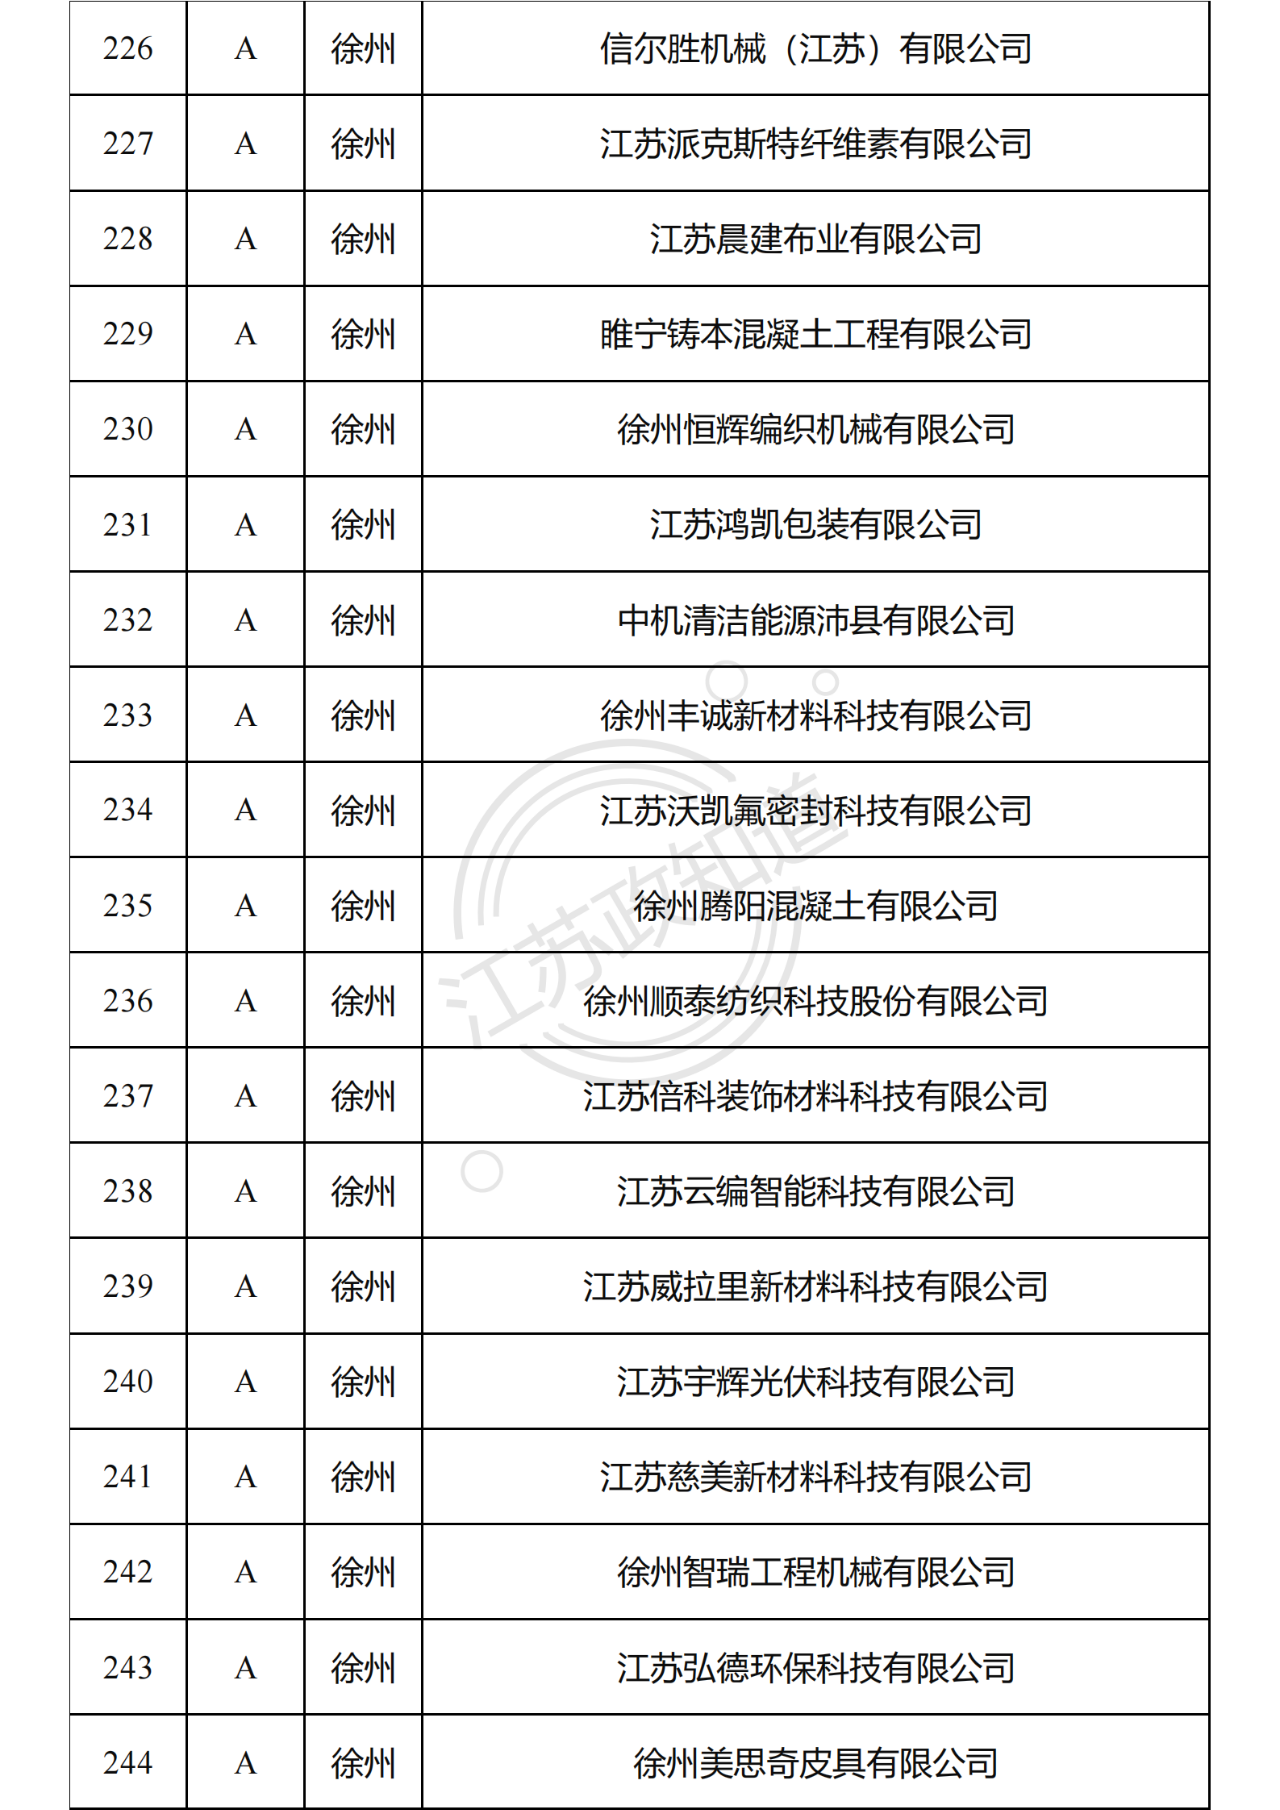 2022年度江苏省两化融合管理体系贯标试点企业培育对象拟认定名单14.png